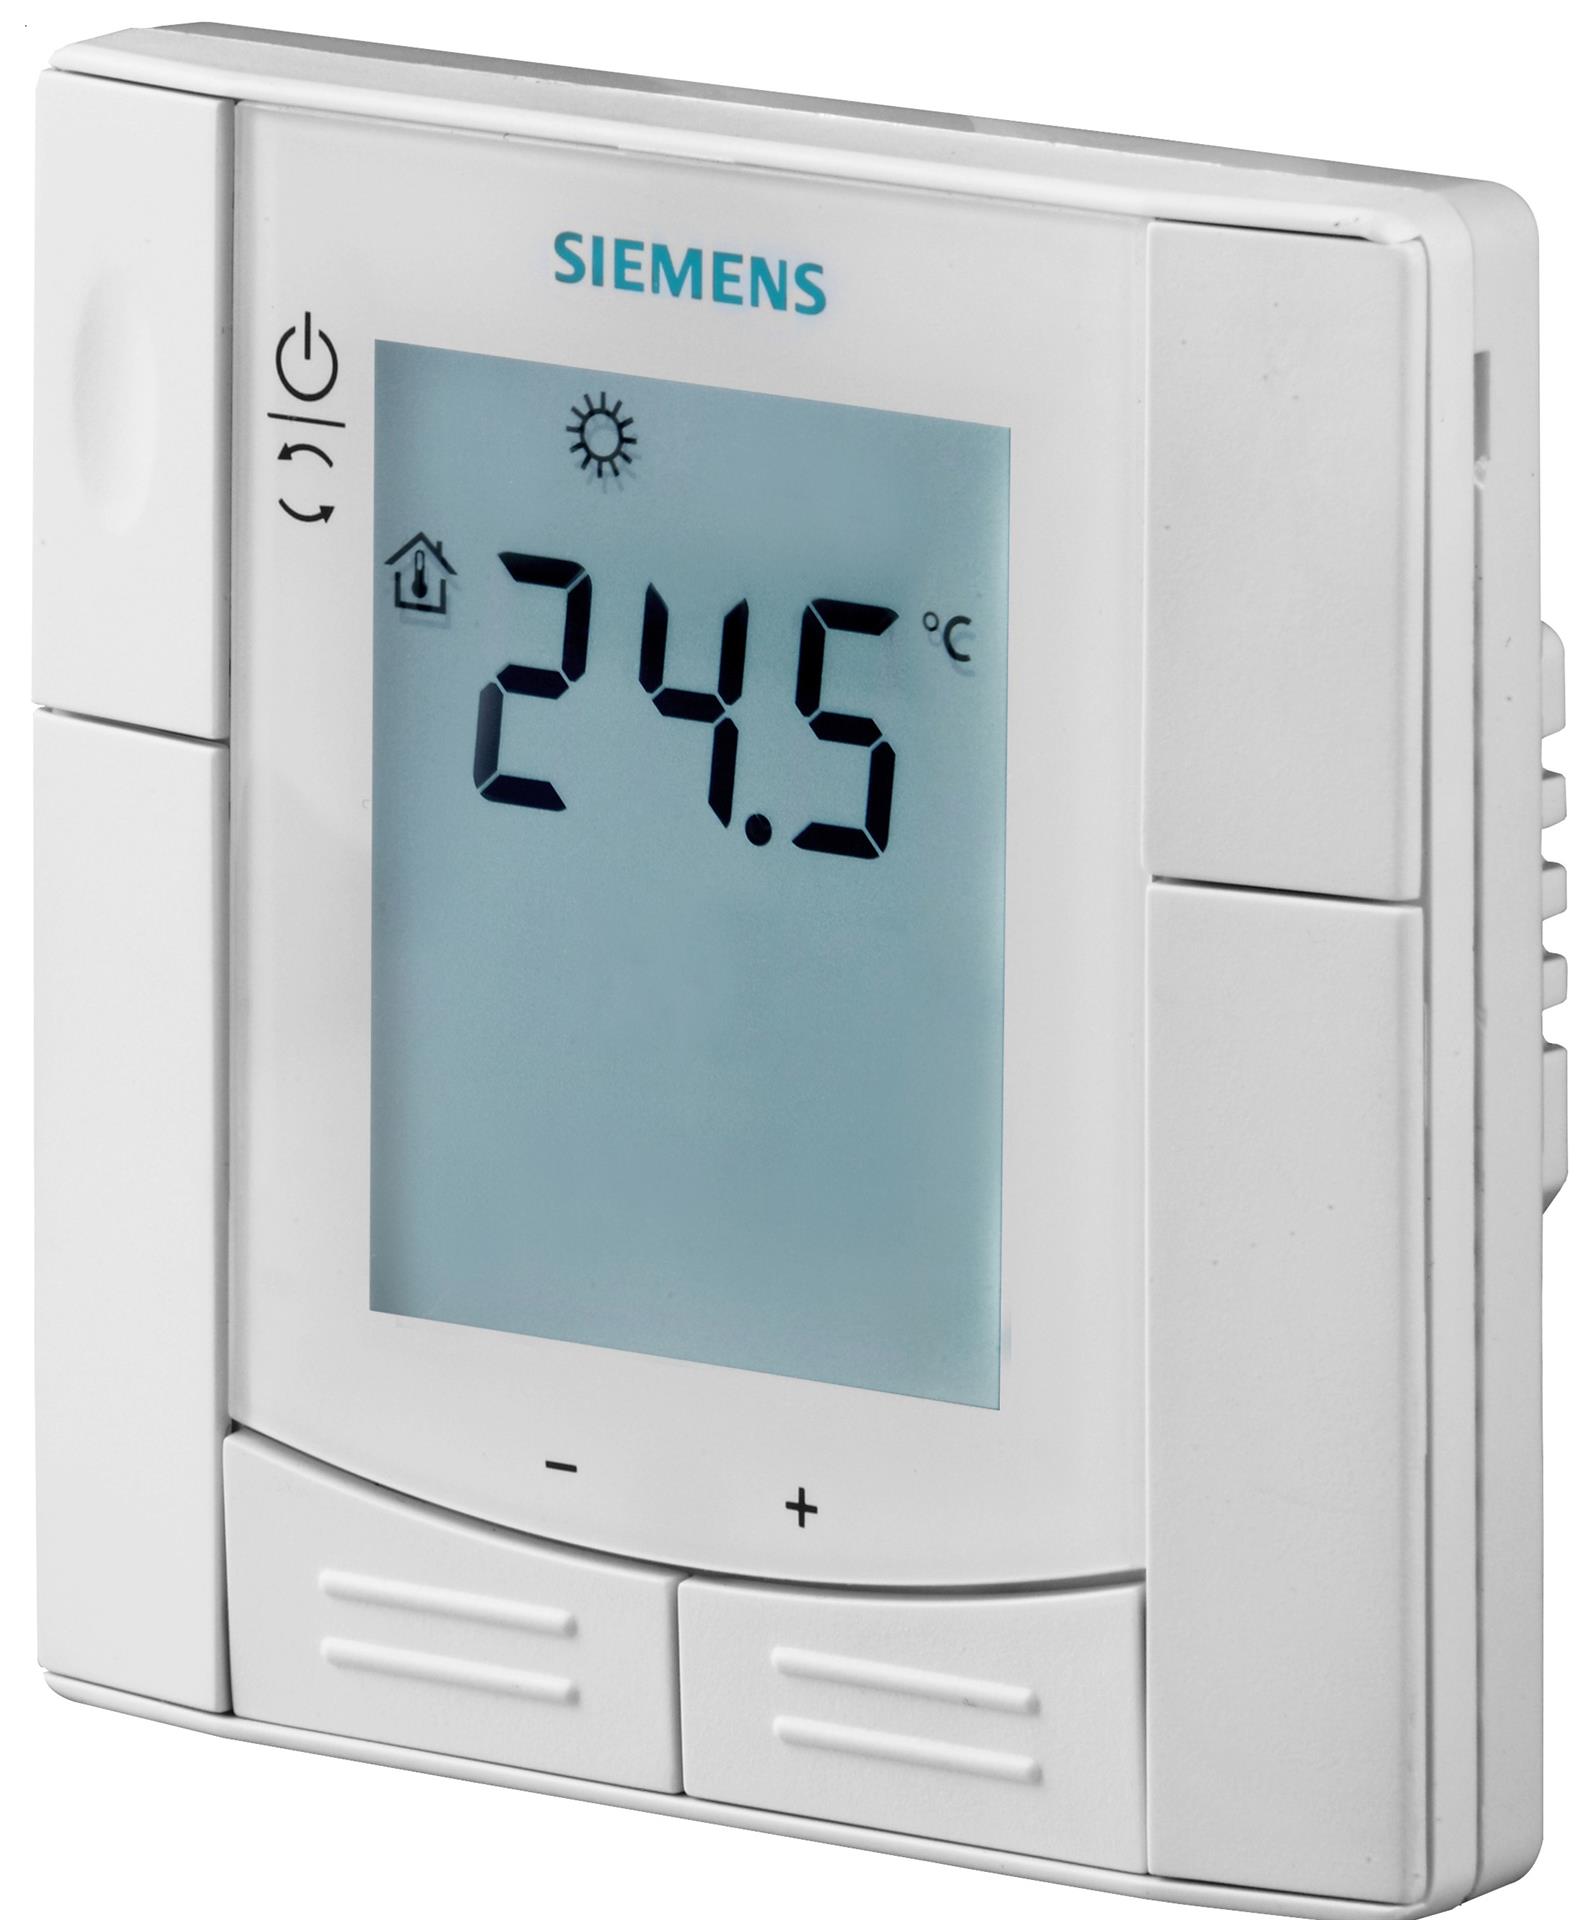 RDD310/EH | S55770-T296 SIEMENS Автономные комнатные термостаты цена, купить